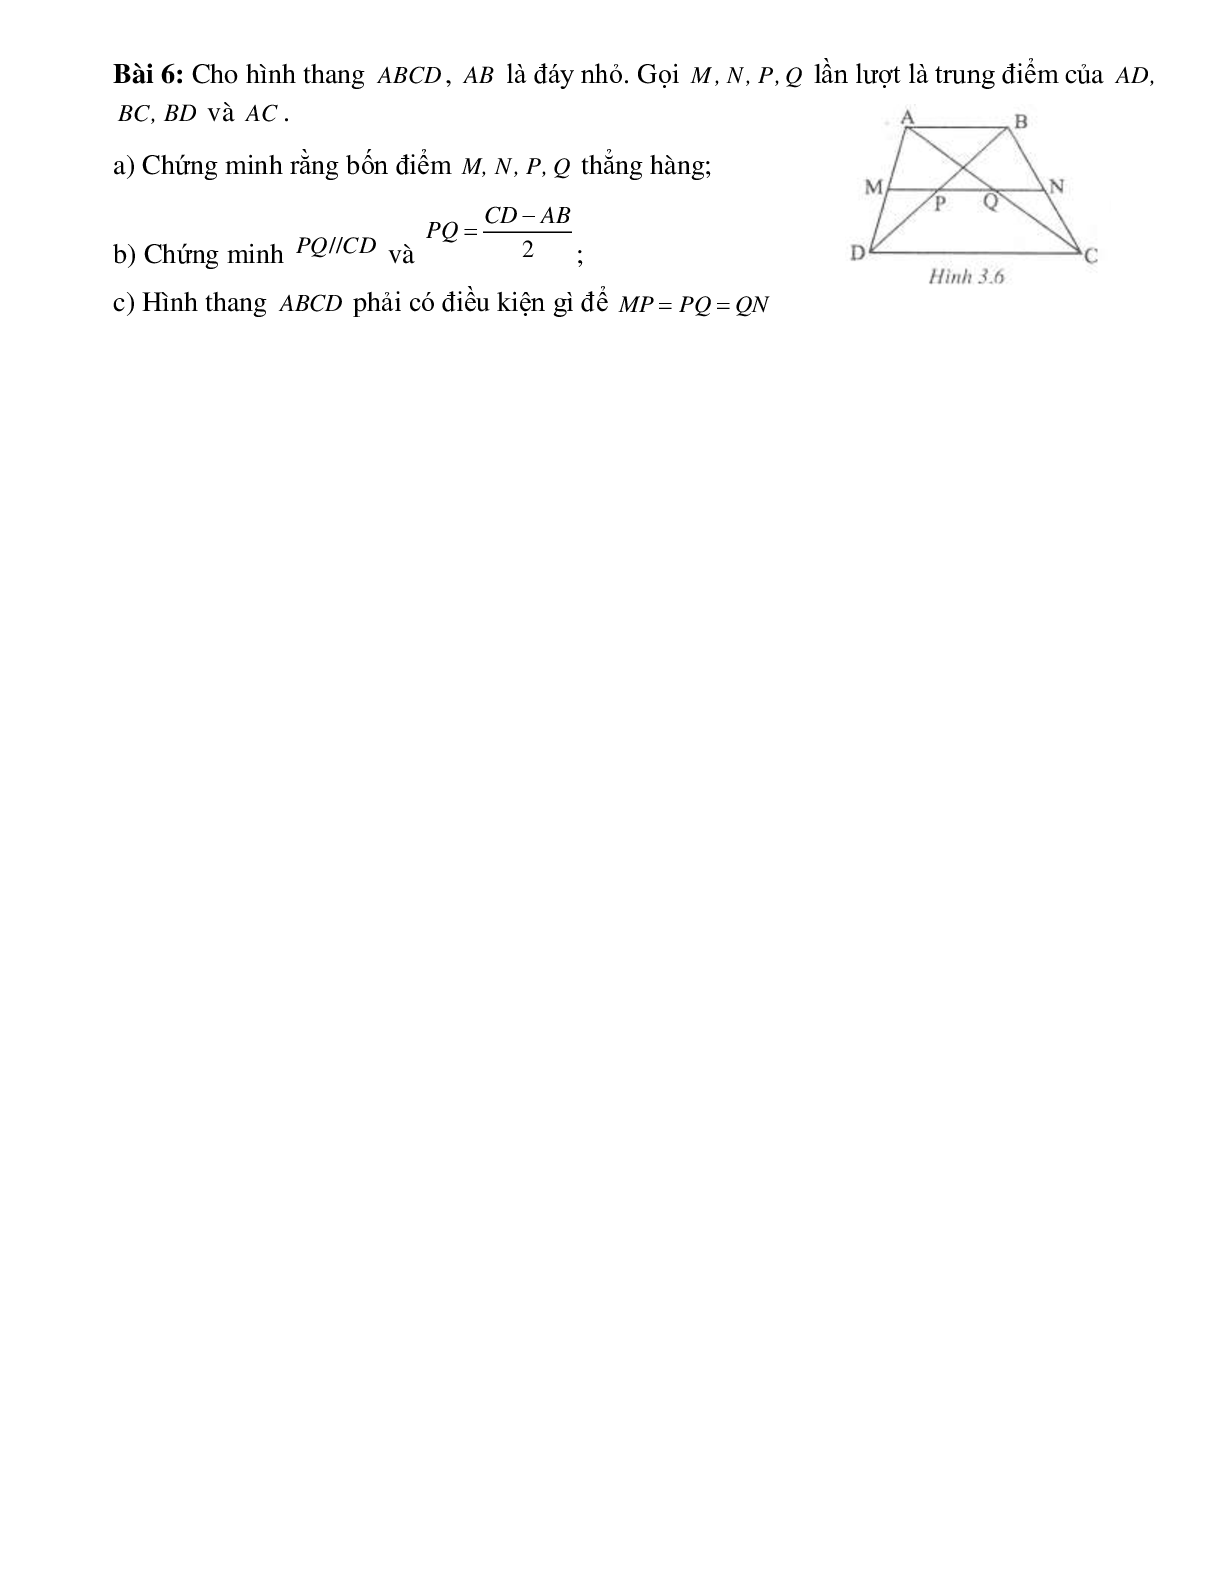 Đường trung bình của hình thang (trang 2)